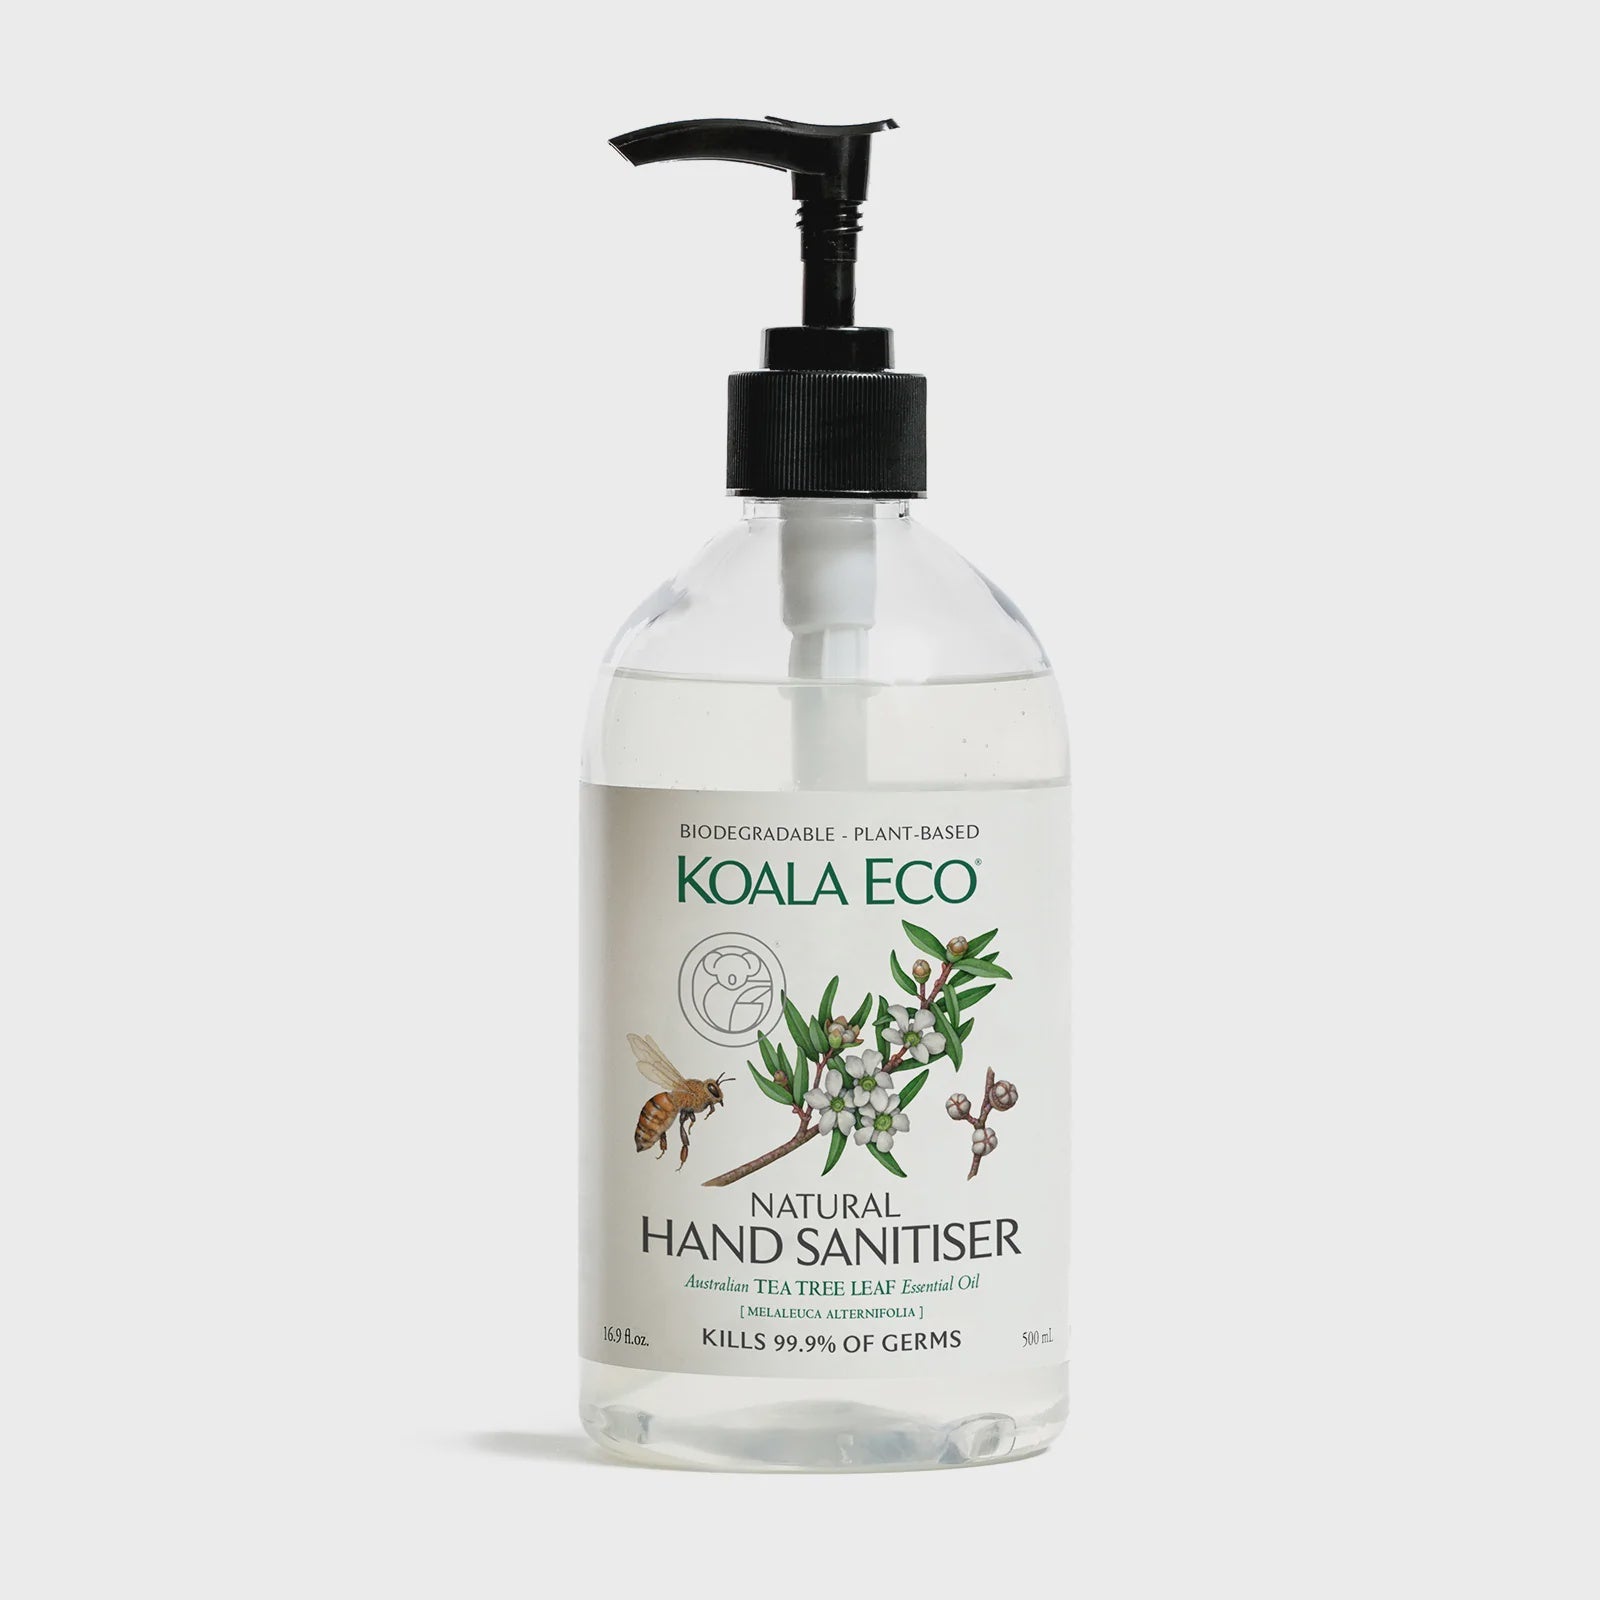 Koala Eco Hand Sanitiser